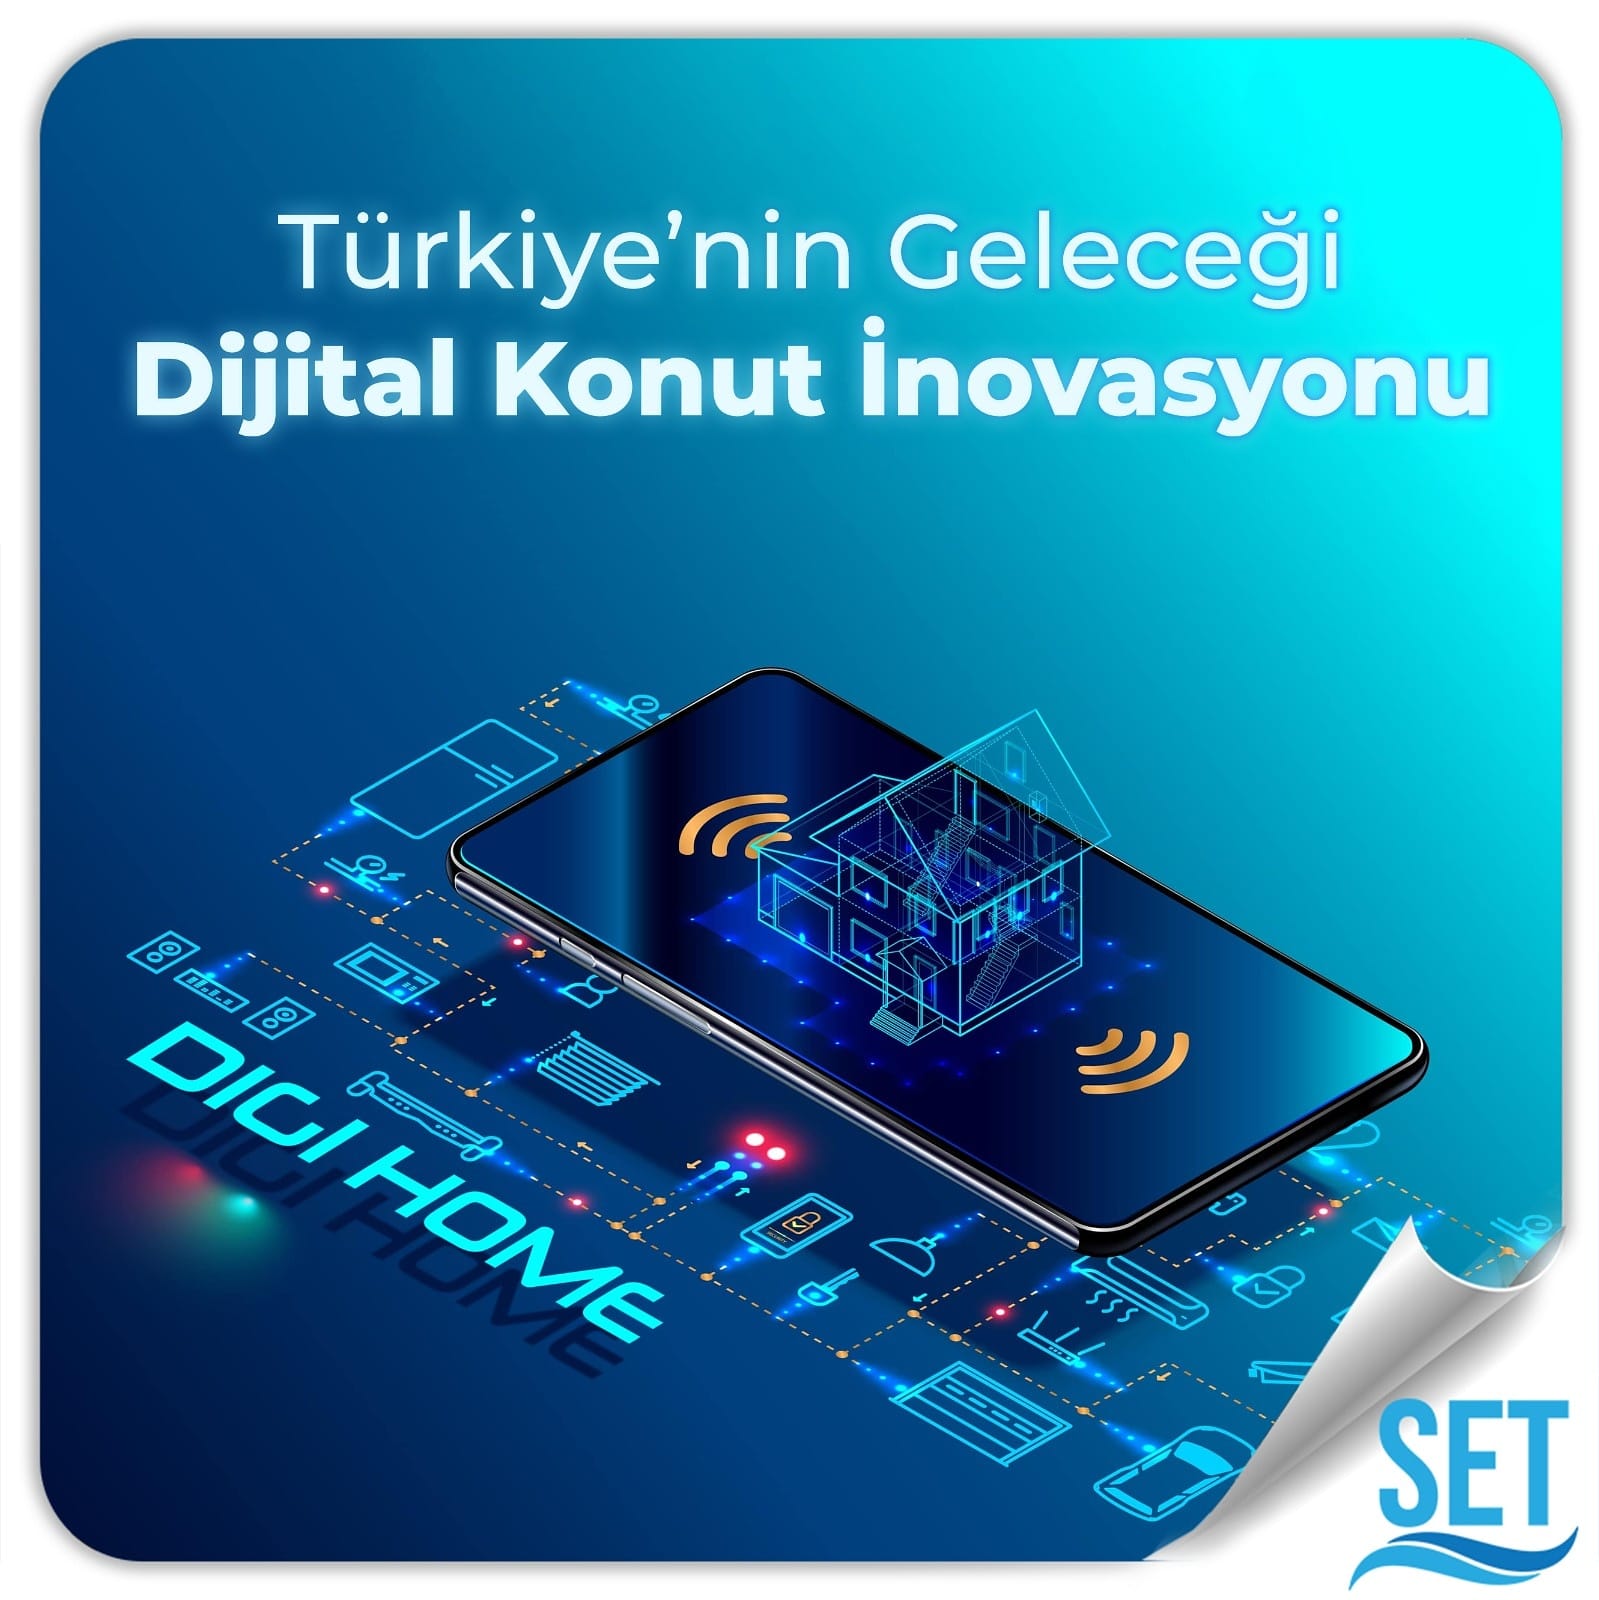 Türkiye'nin geleceği dijital konut inovasyonu SET Premium Digihome ile sizlerle